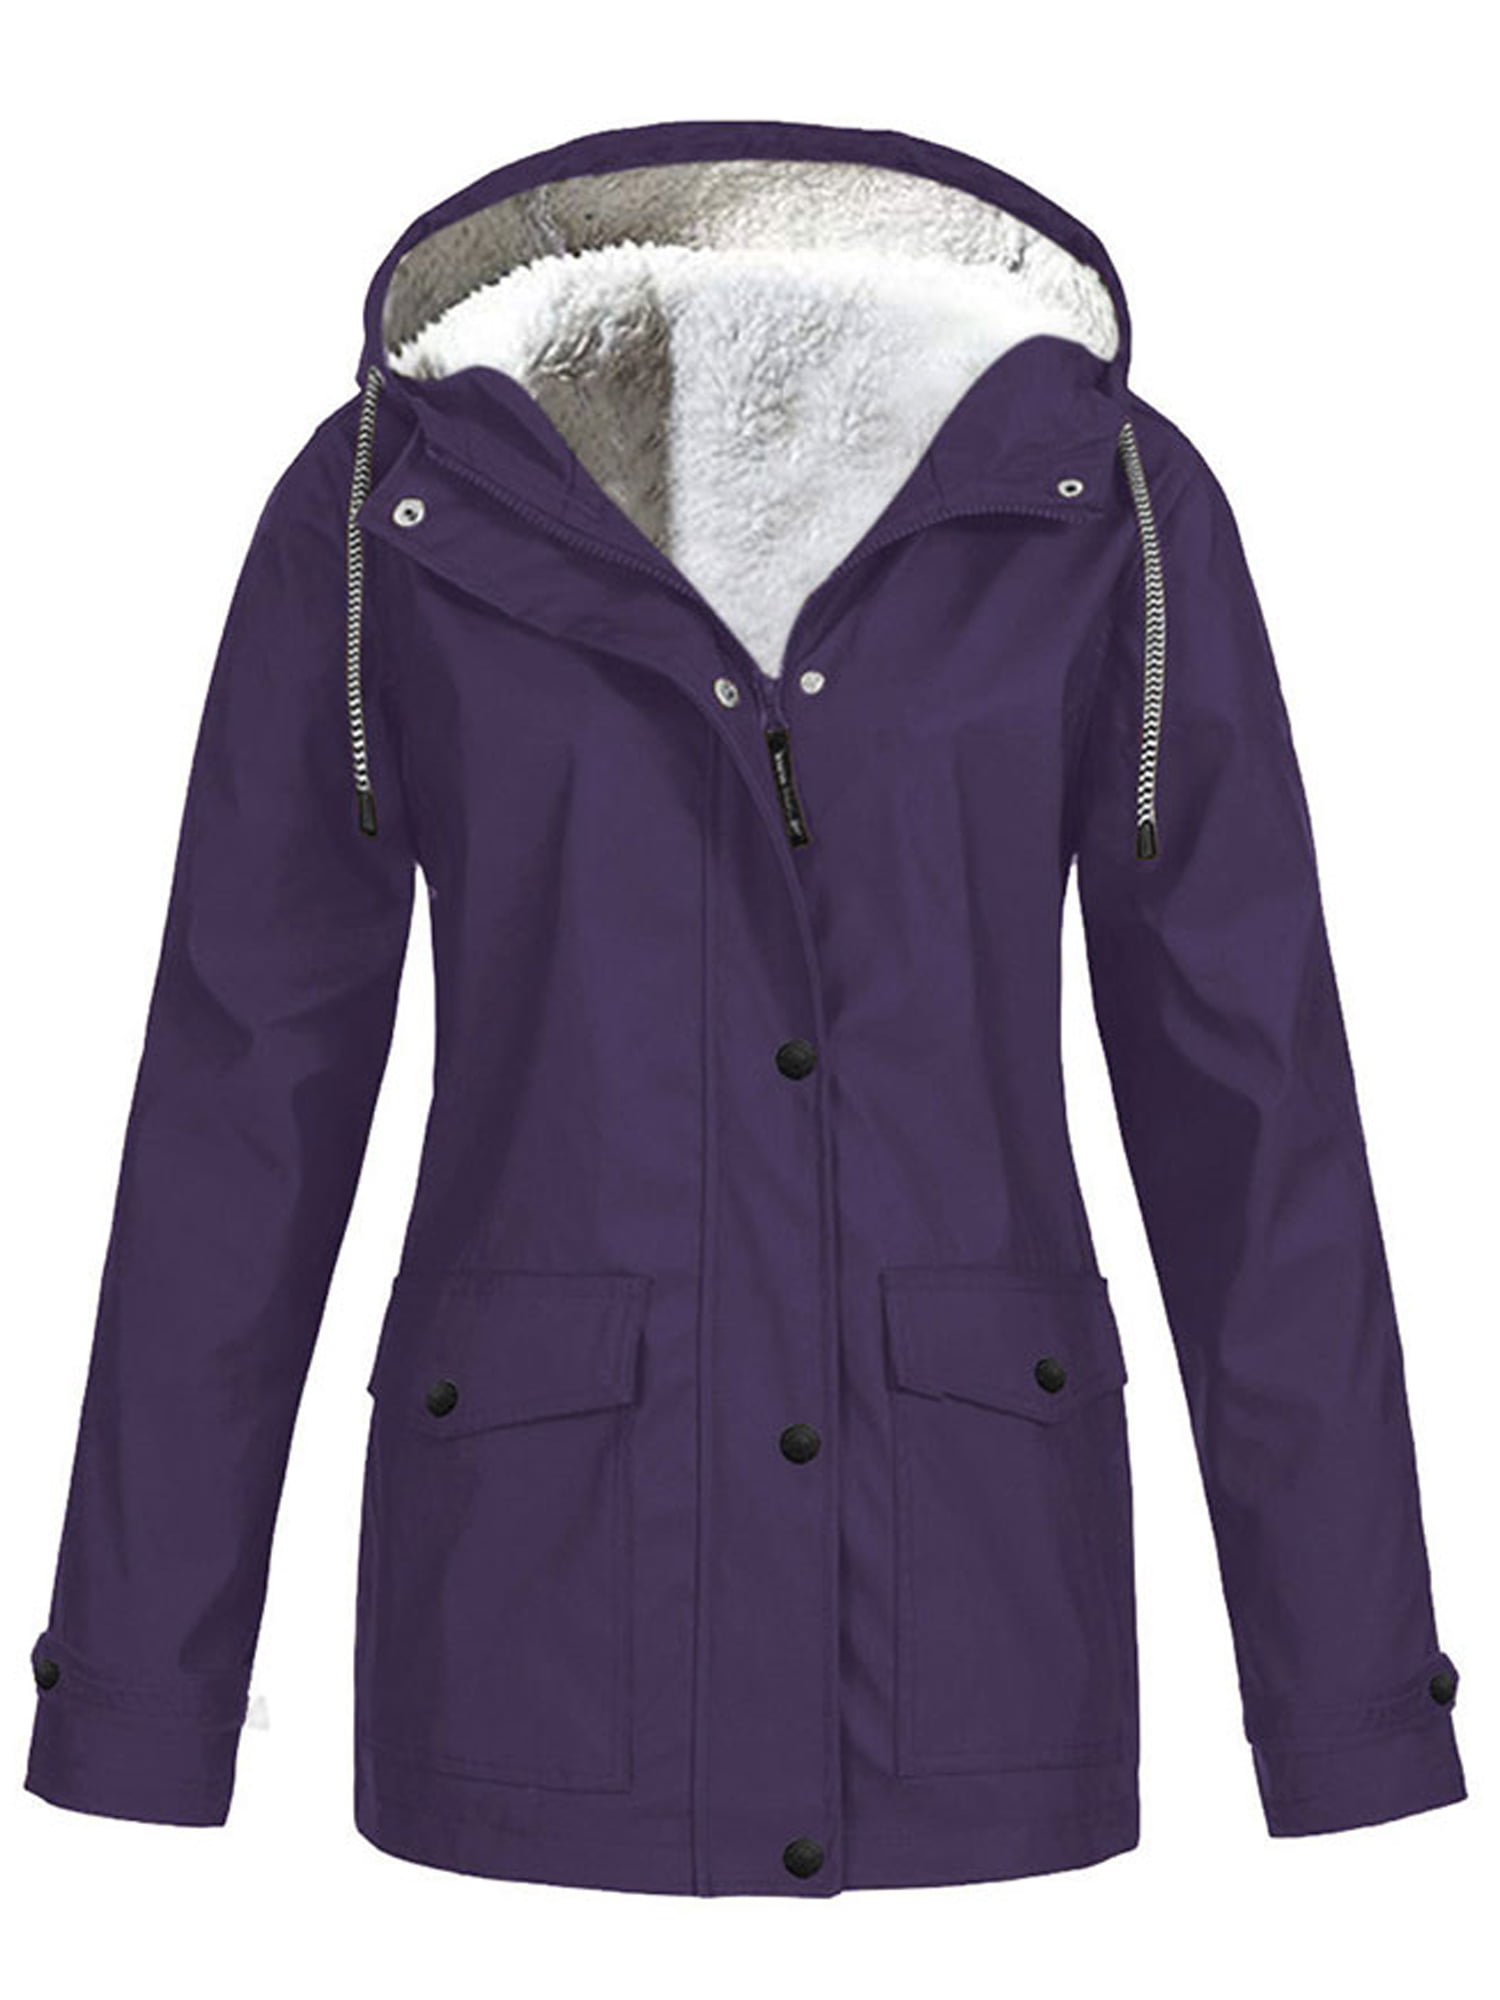 Wodstyle - Women's Waterproof Jacket Raincoat Fleece Lined Warm Winter